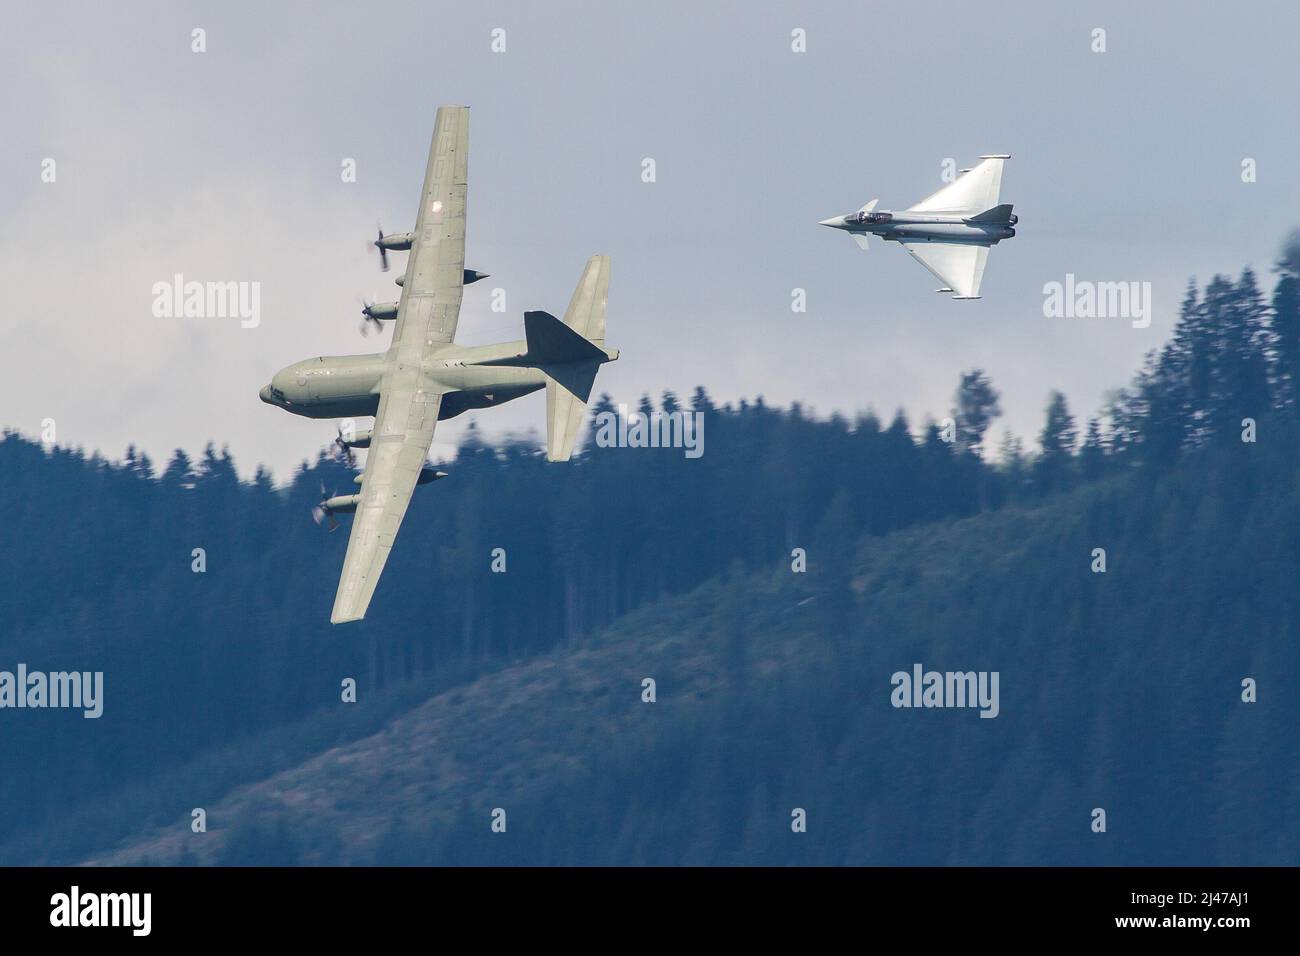 Aviazione militare austriaca Eurofighter jet intercettare un aereo da trasporto C-130 Hercules in una missione di addestramento Foto Stock